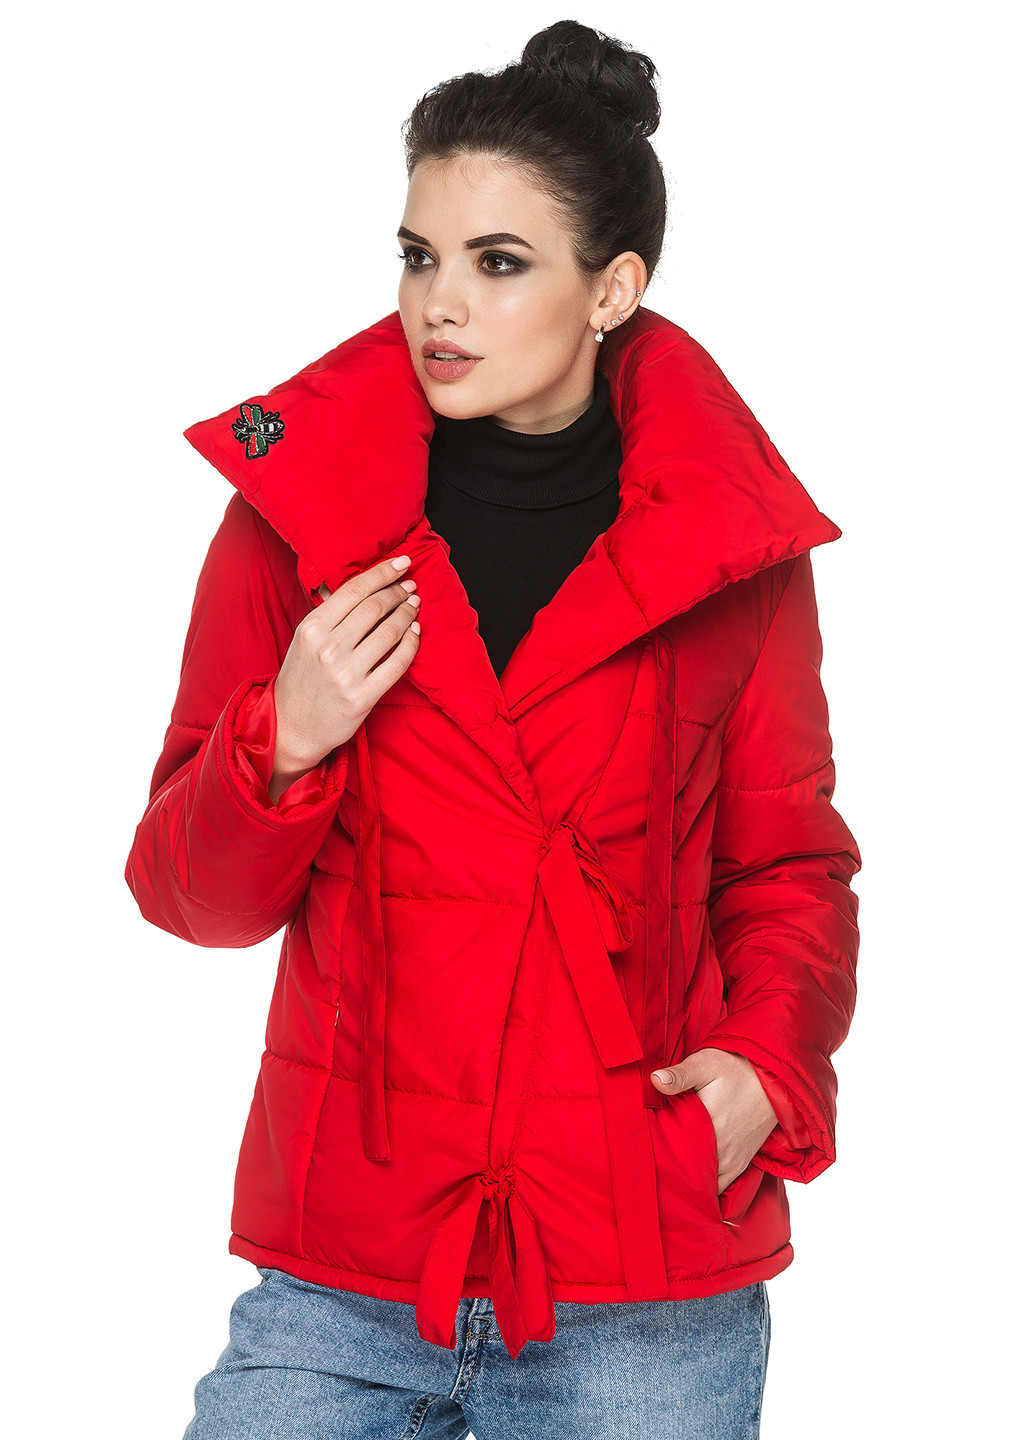 Красная демисезонная куртка Кариант